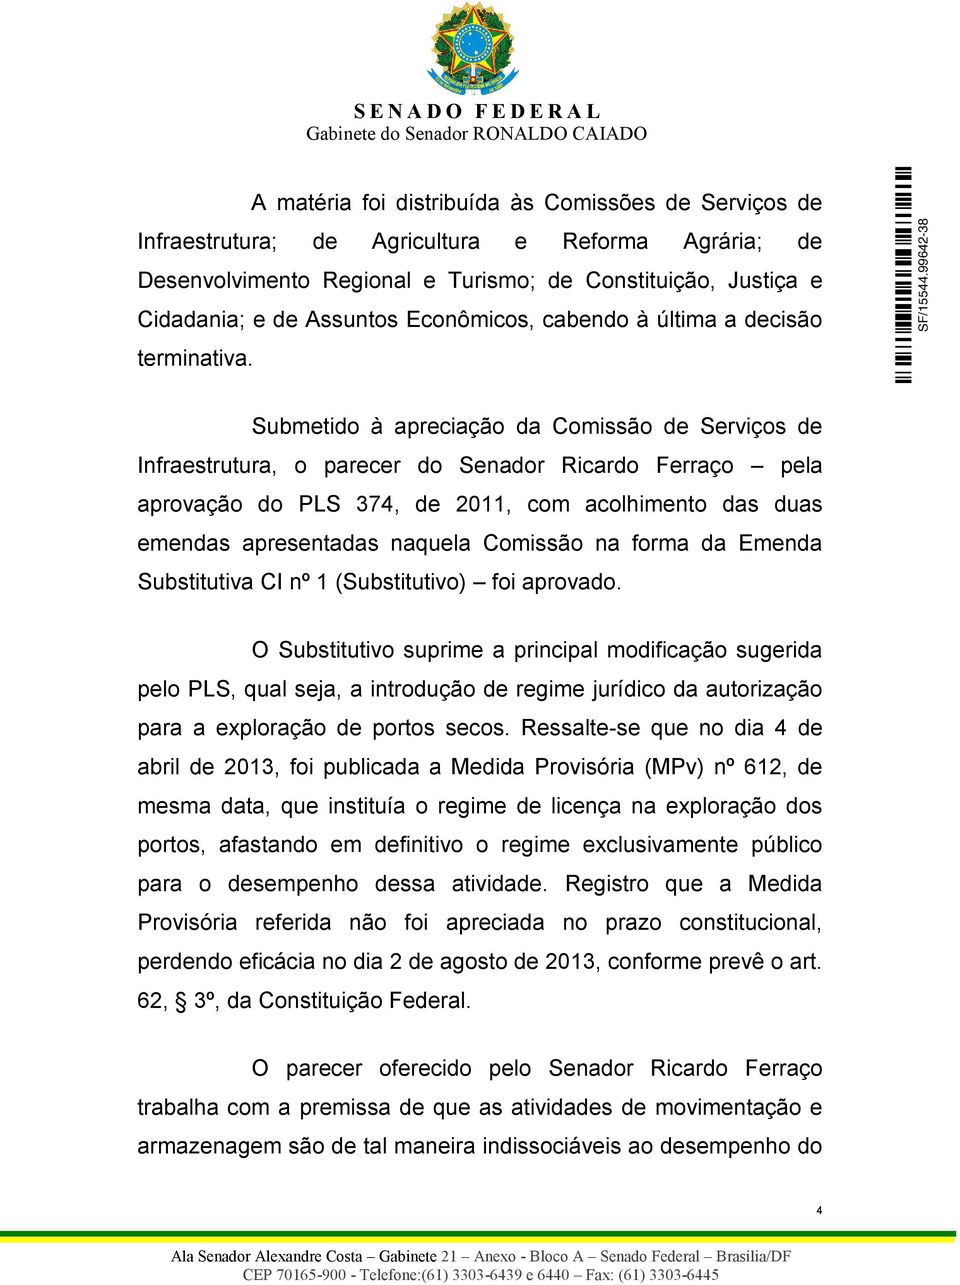 Submetido à apreciação da Comissão de Serviços de Infraestrutura, o parecer do Senador Ricardo Ferraço pela aprovação do PLS 374, de 2011, com acolhimento das duas emendas apresentadas naquela